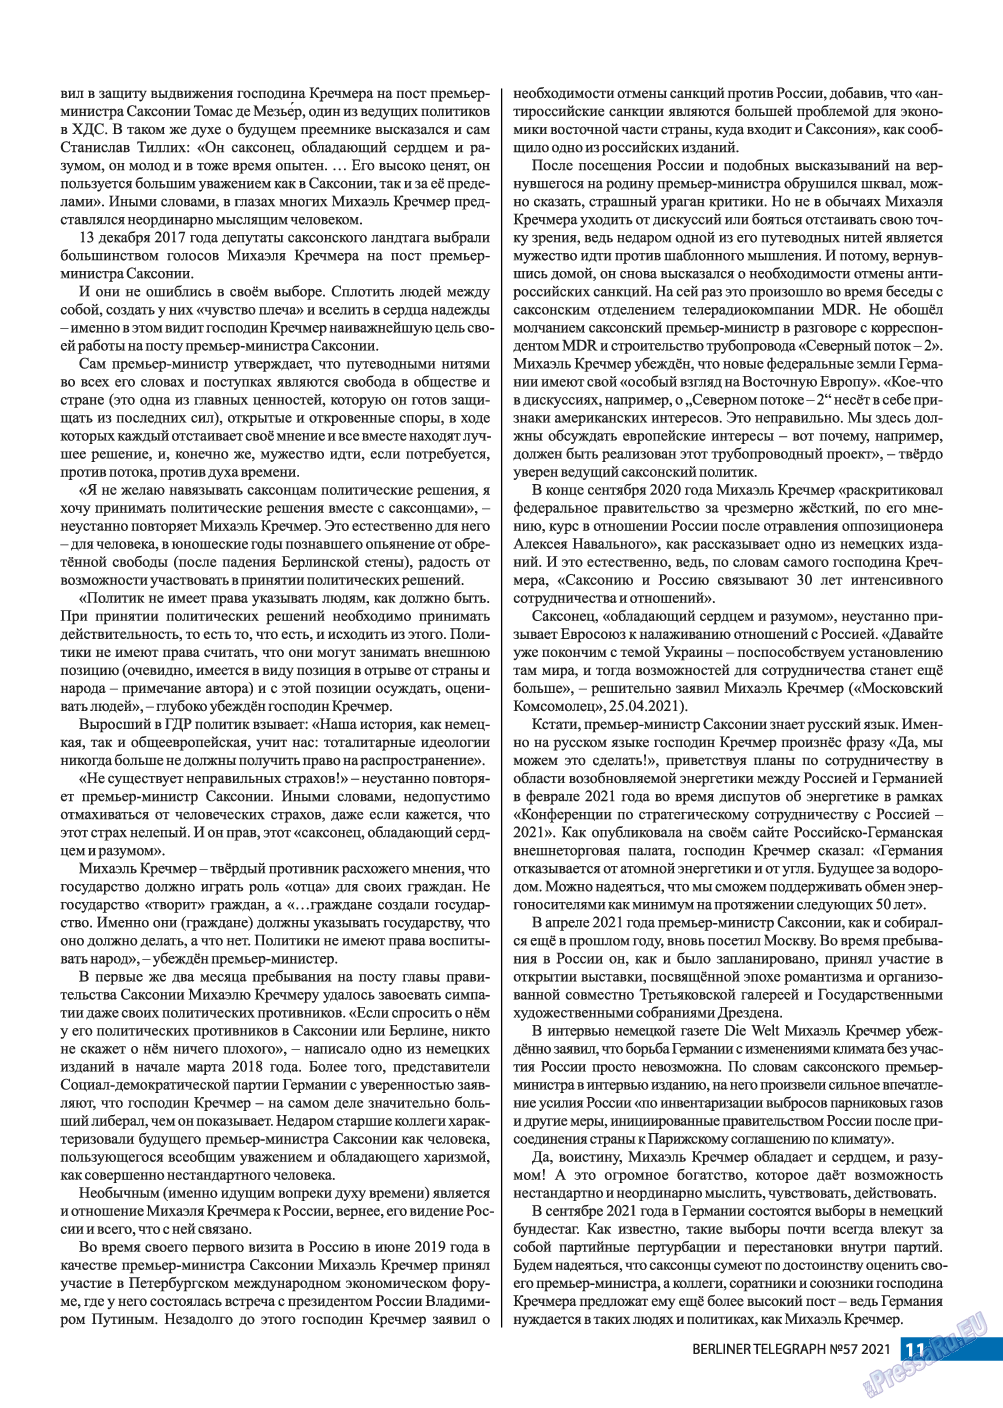 Берлинский телеграф, журнал. 2021 №57 стр.11